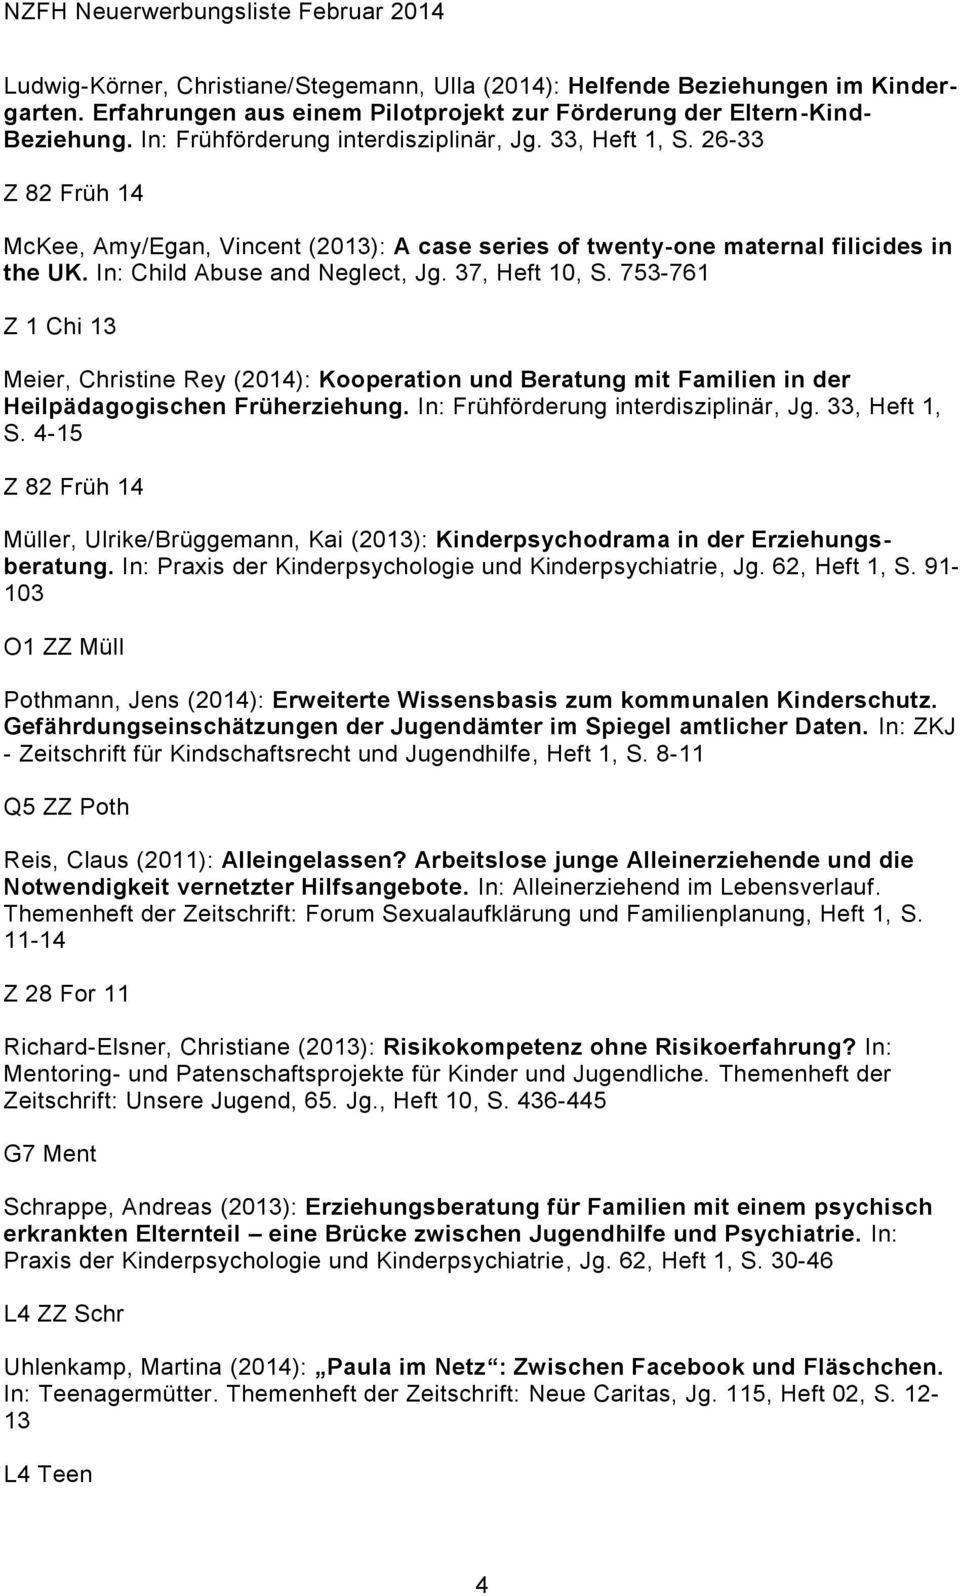 753-761 Meier, Christine Rey (2014): Kooperation und Beratung mit Familien in der Heilpädagogischen Früherziehung. In: Frühförderung interdisziplinär, Jg. 33, Heft 1, S.